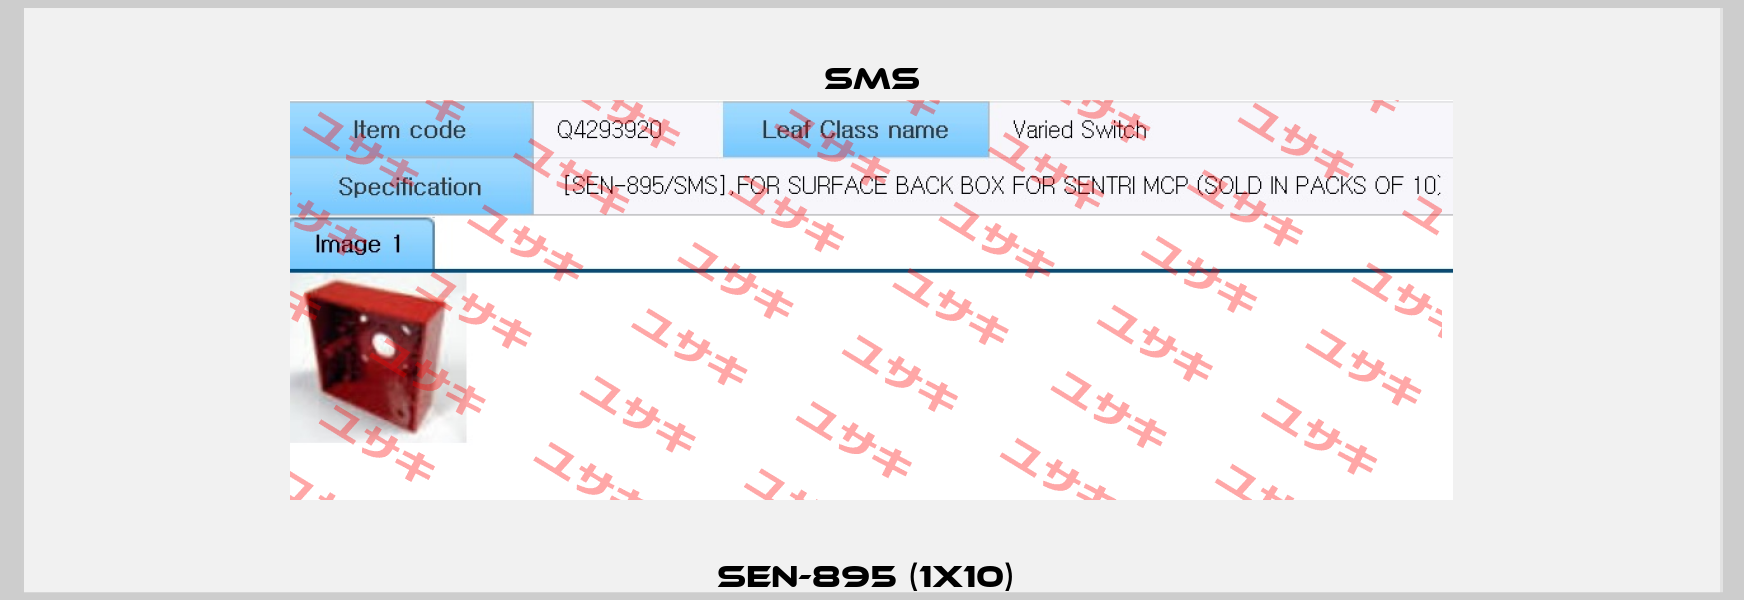 SEN-895 (1x10)  SMS